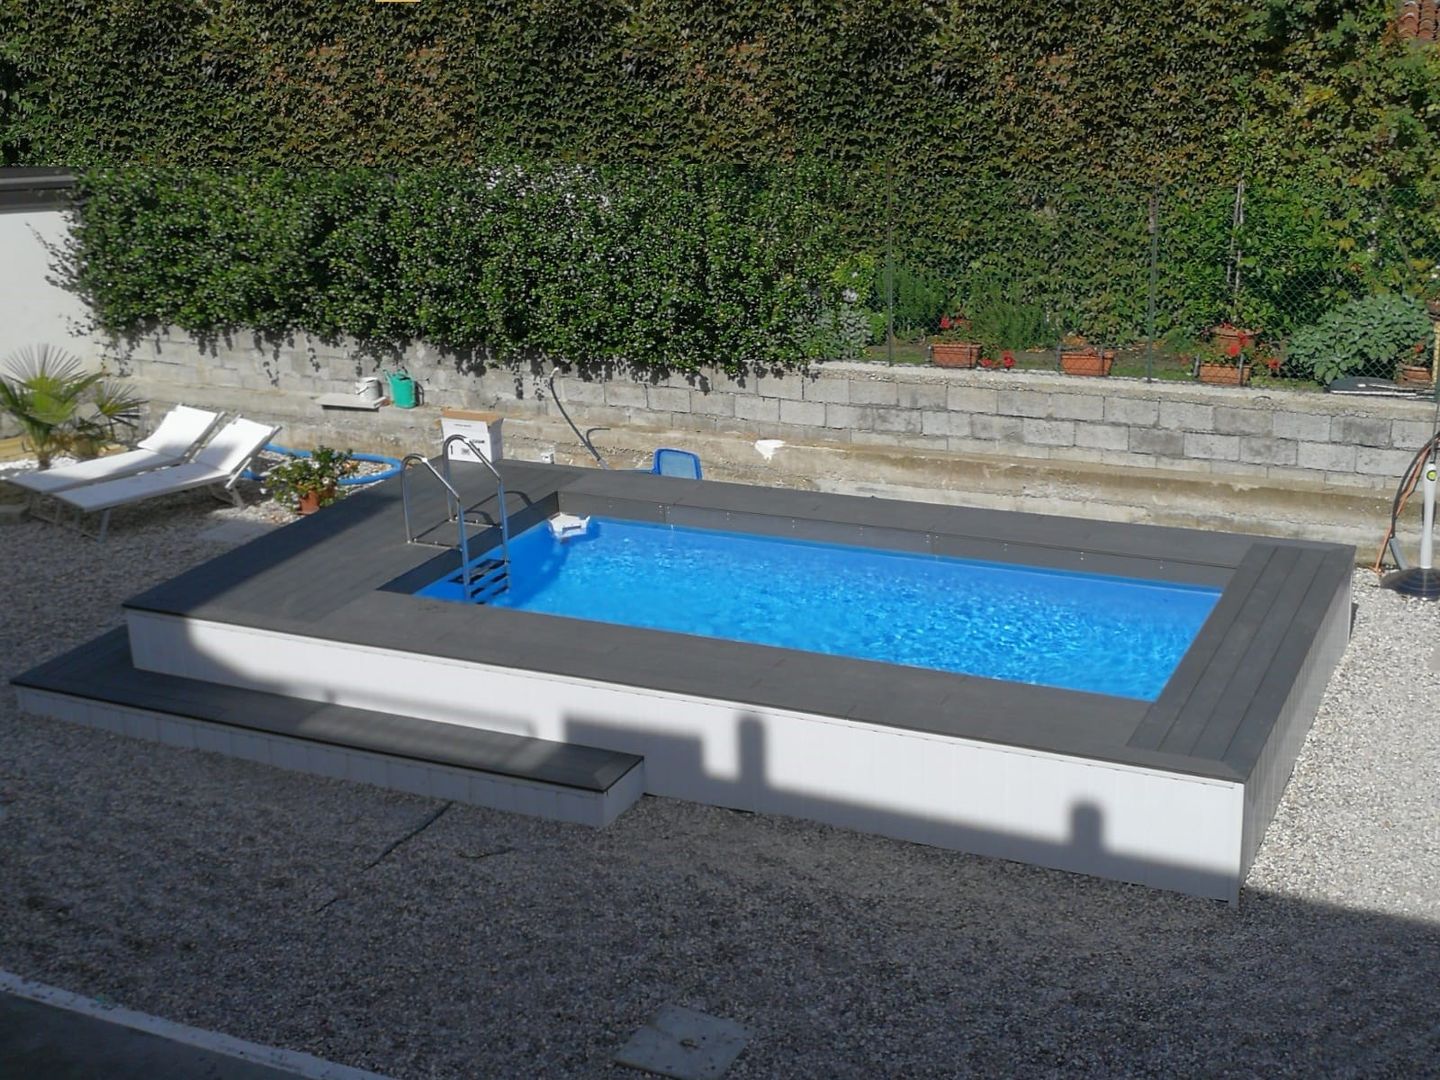 Piscina fuori terra seminterrata: Aquazzura Piscine può realizzare con facilità il tuo progetto, Aquazzura Piscine Aquazzura Piscine Garden Pool